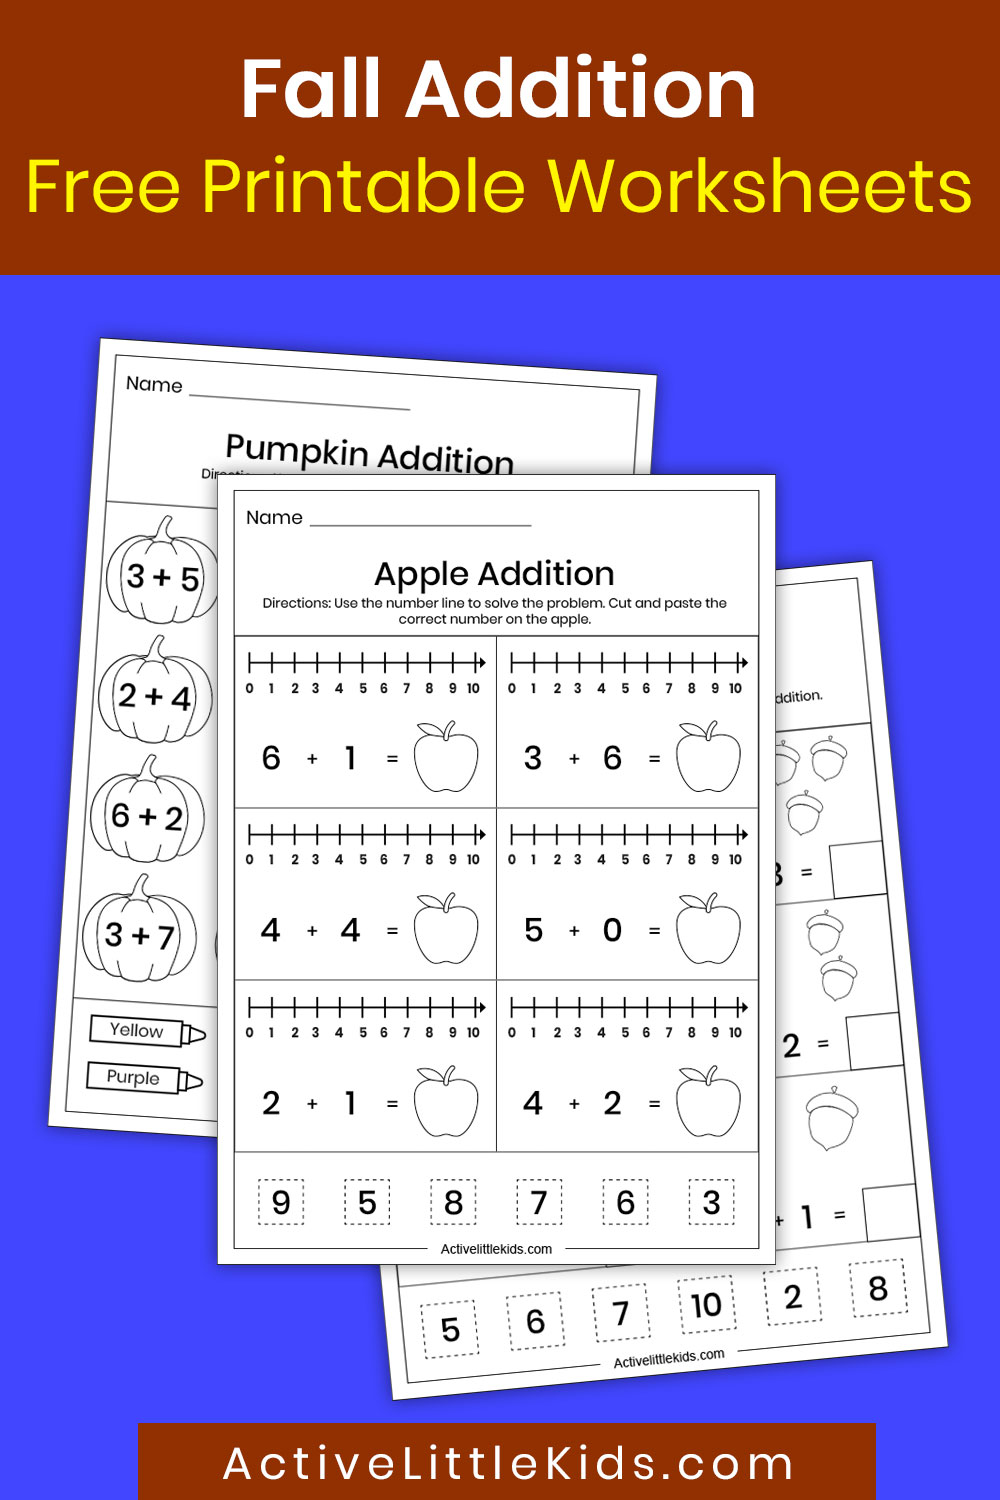 Fall addition worksheets for kindergarten - Active Little Kids